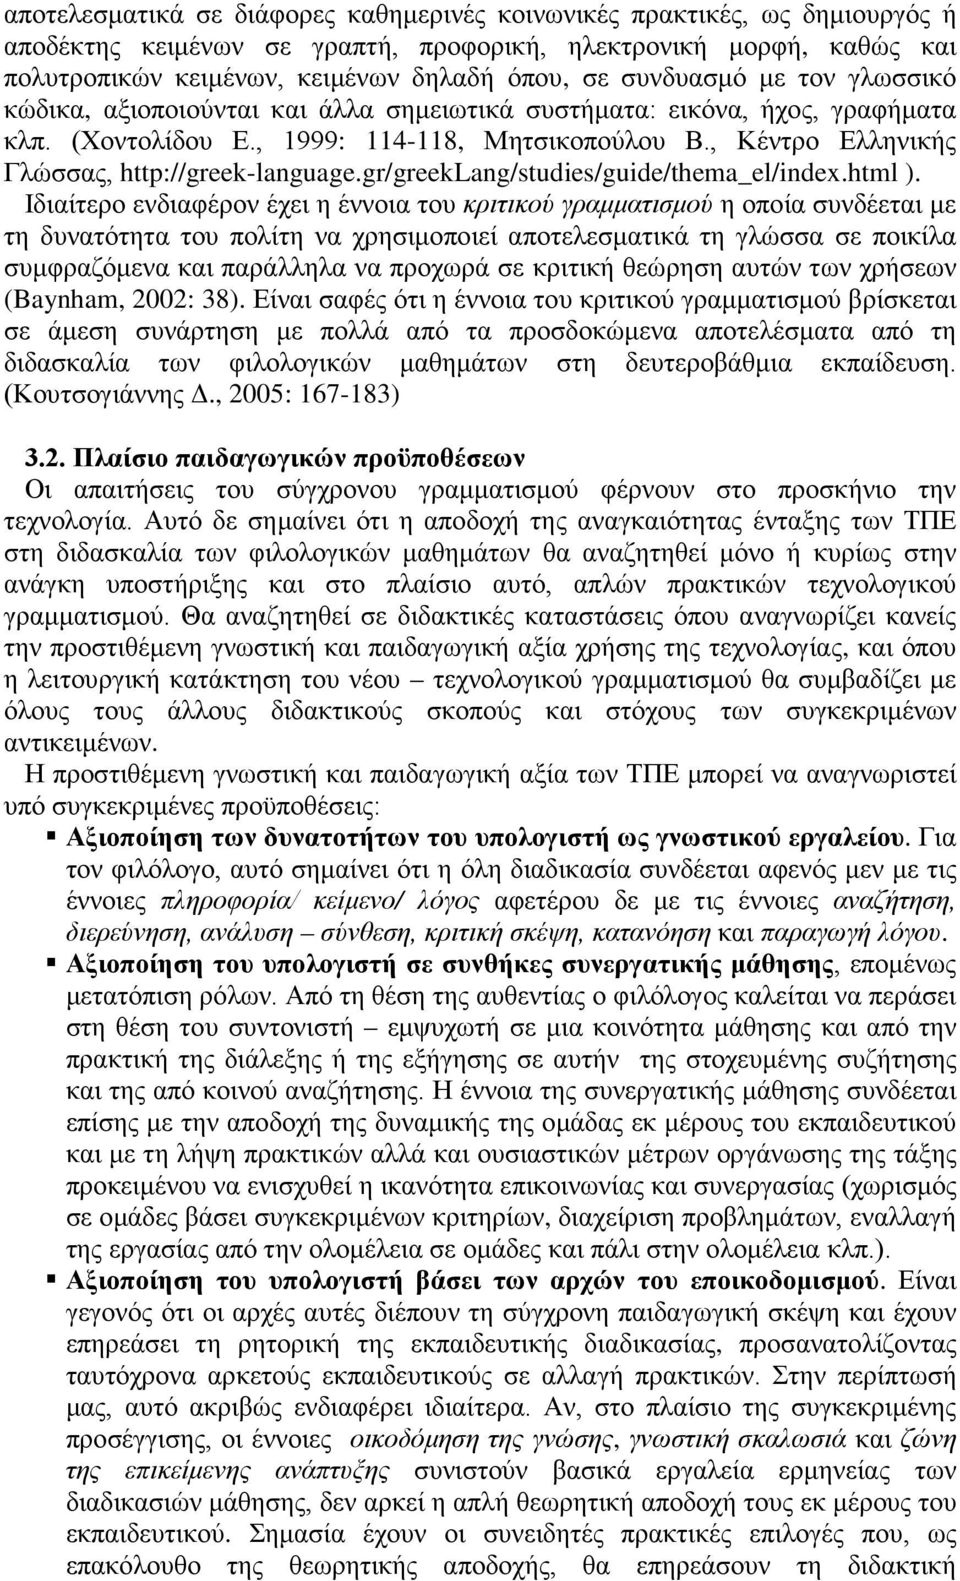 , Κέντρο Ελληνικής Γλώσσας, http://greek-language.gr/greeklang/studies/guide/thema_el/index.html ).